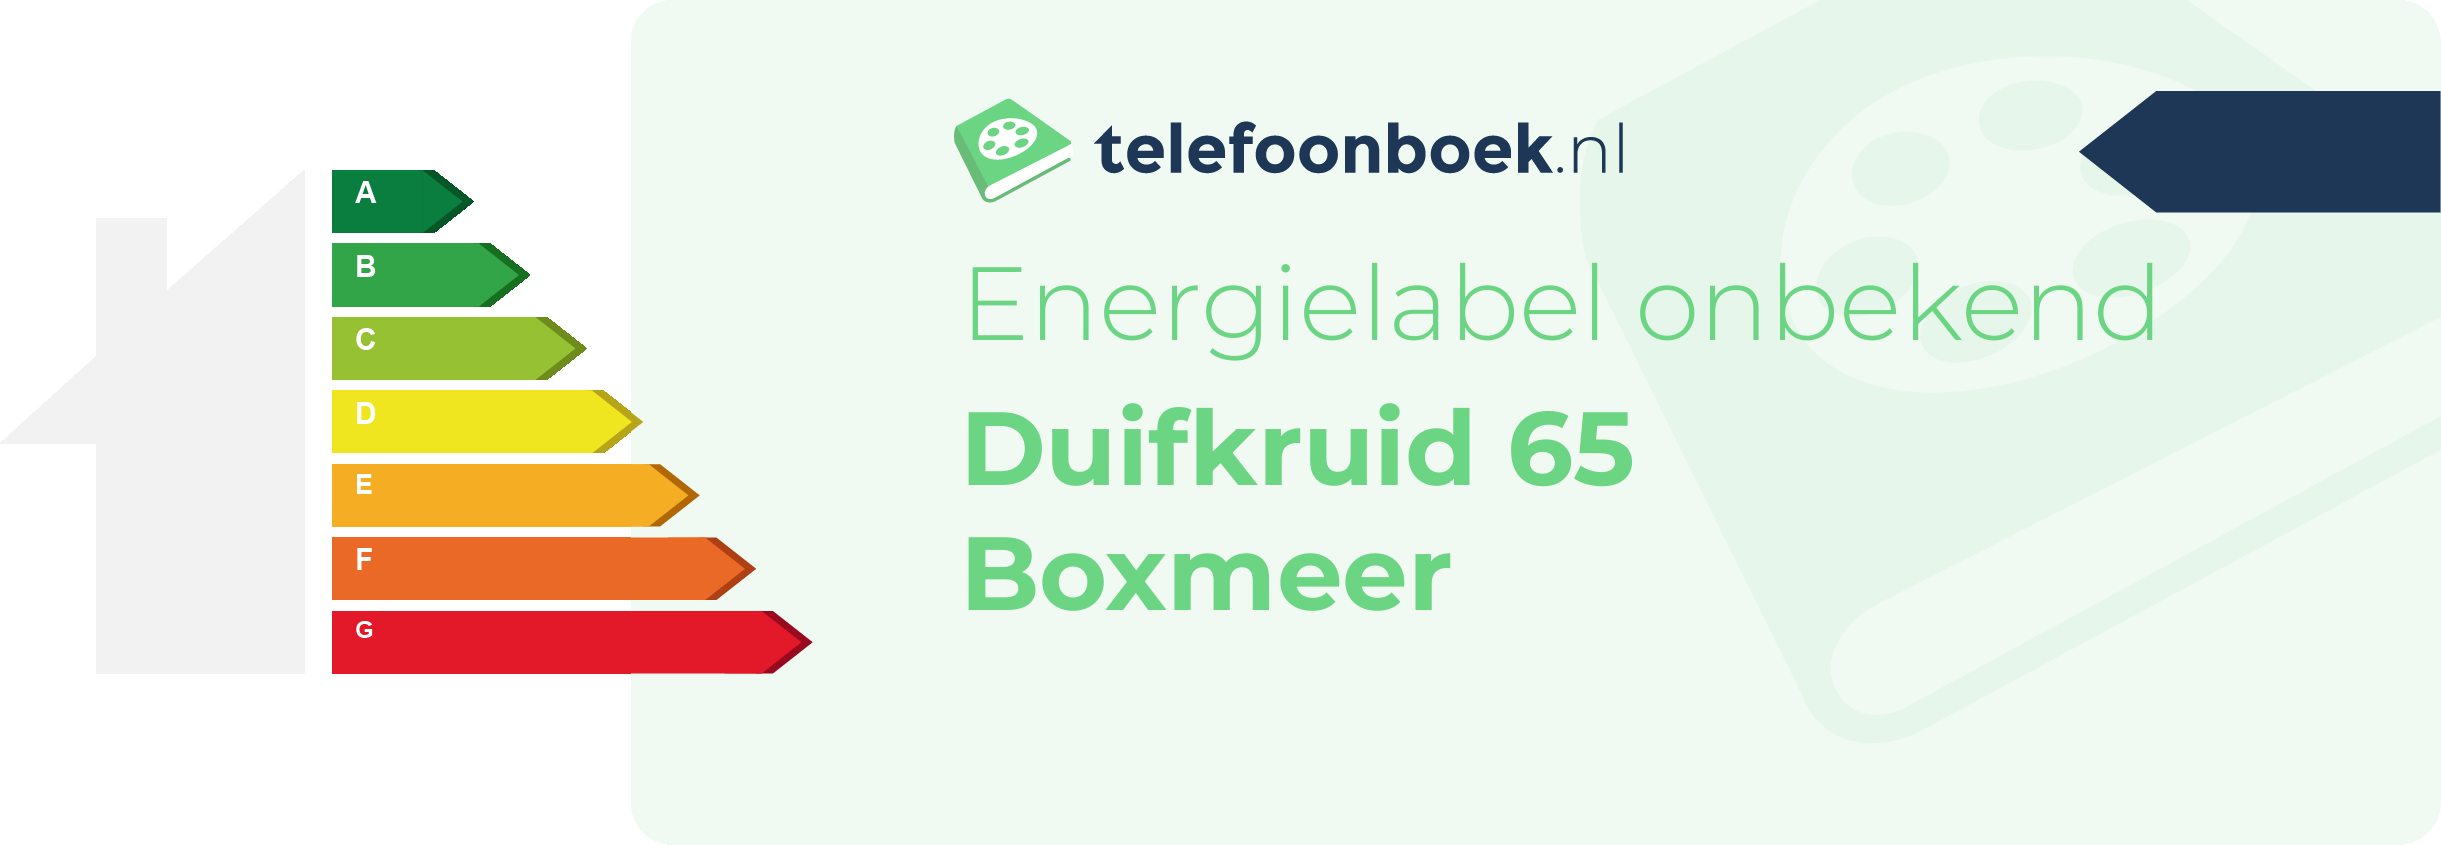 Energielabel Duifkruid 65 Boxmeer